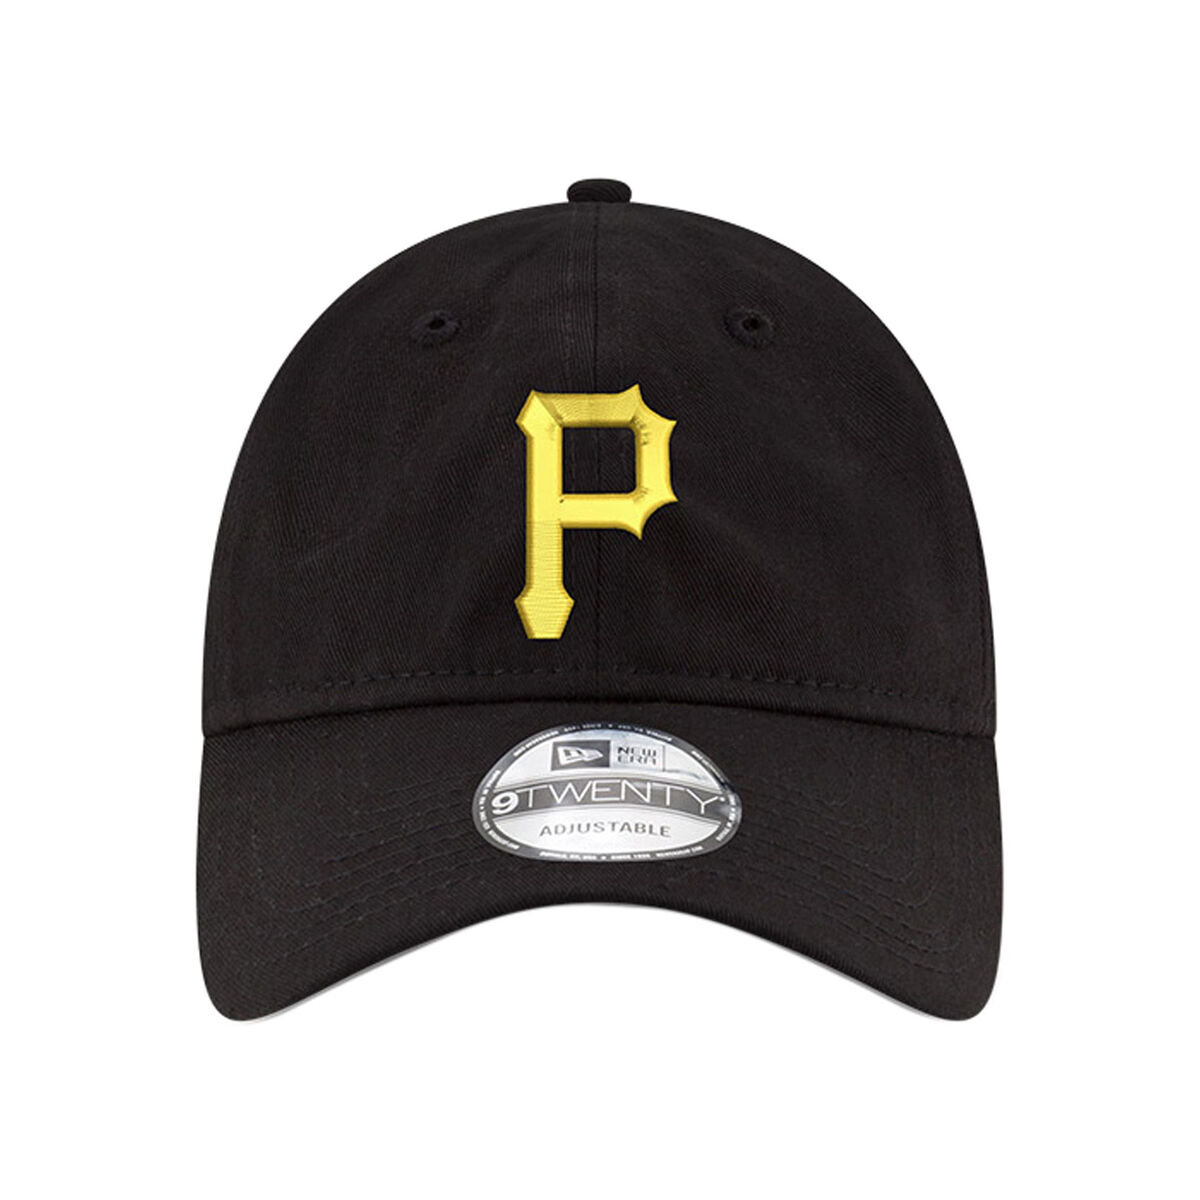 Pittsburgh Pirates Baseball Jerseys, Pirates Jerseys, Authentic Pirates  Jersey